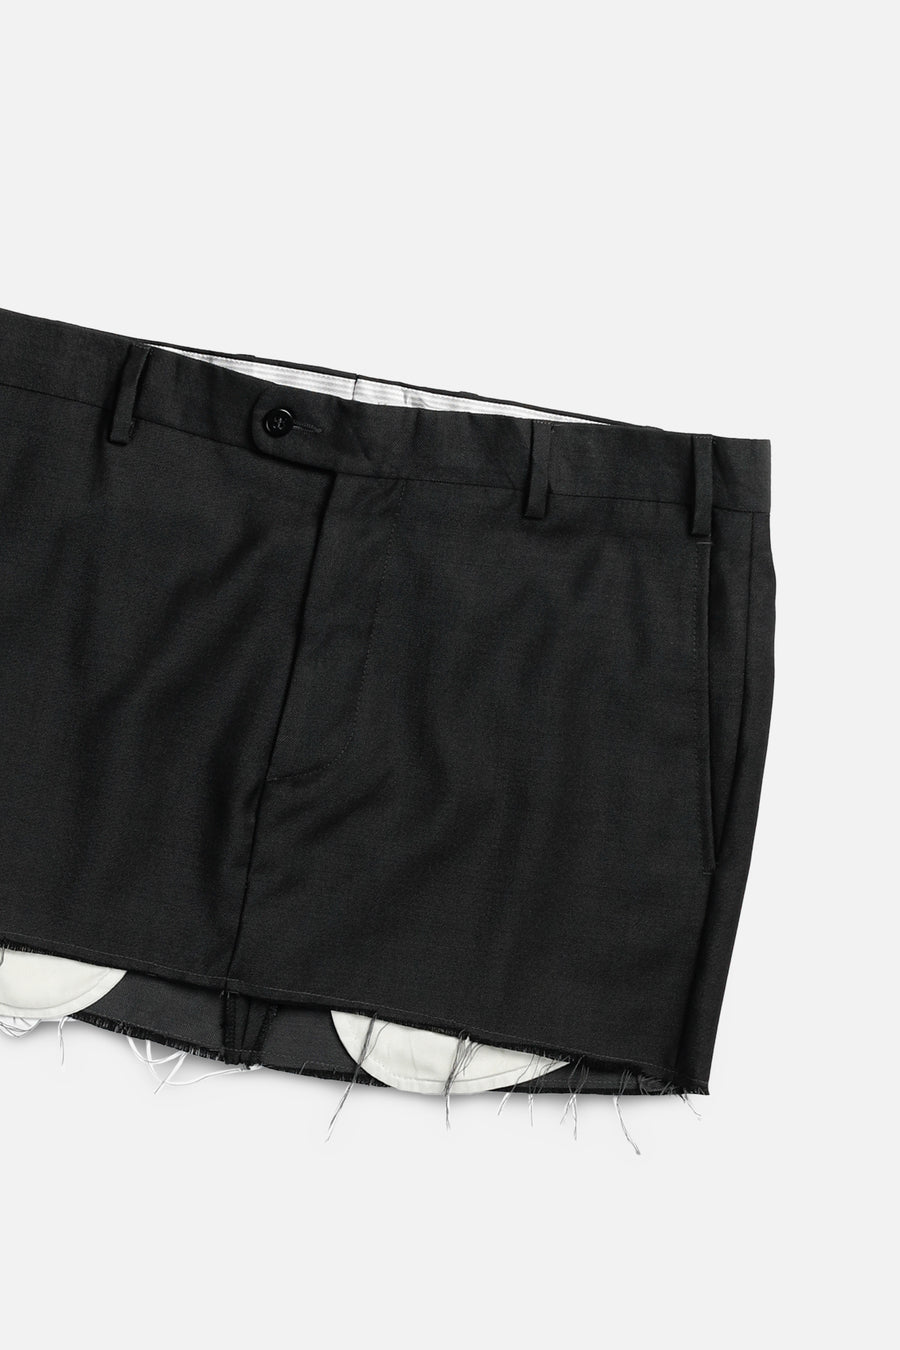 Rework Trouser Skirt - L